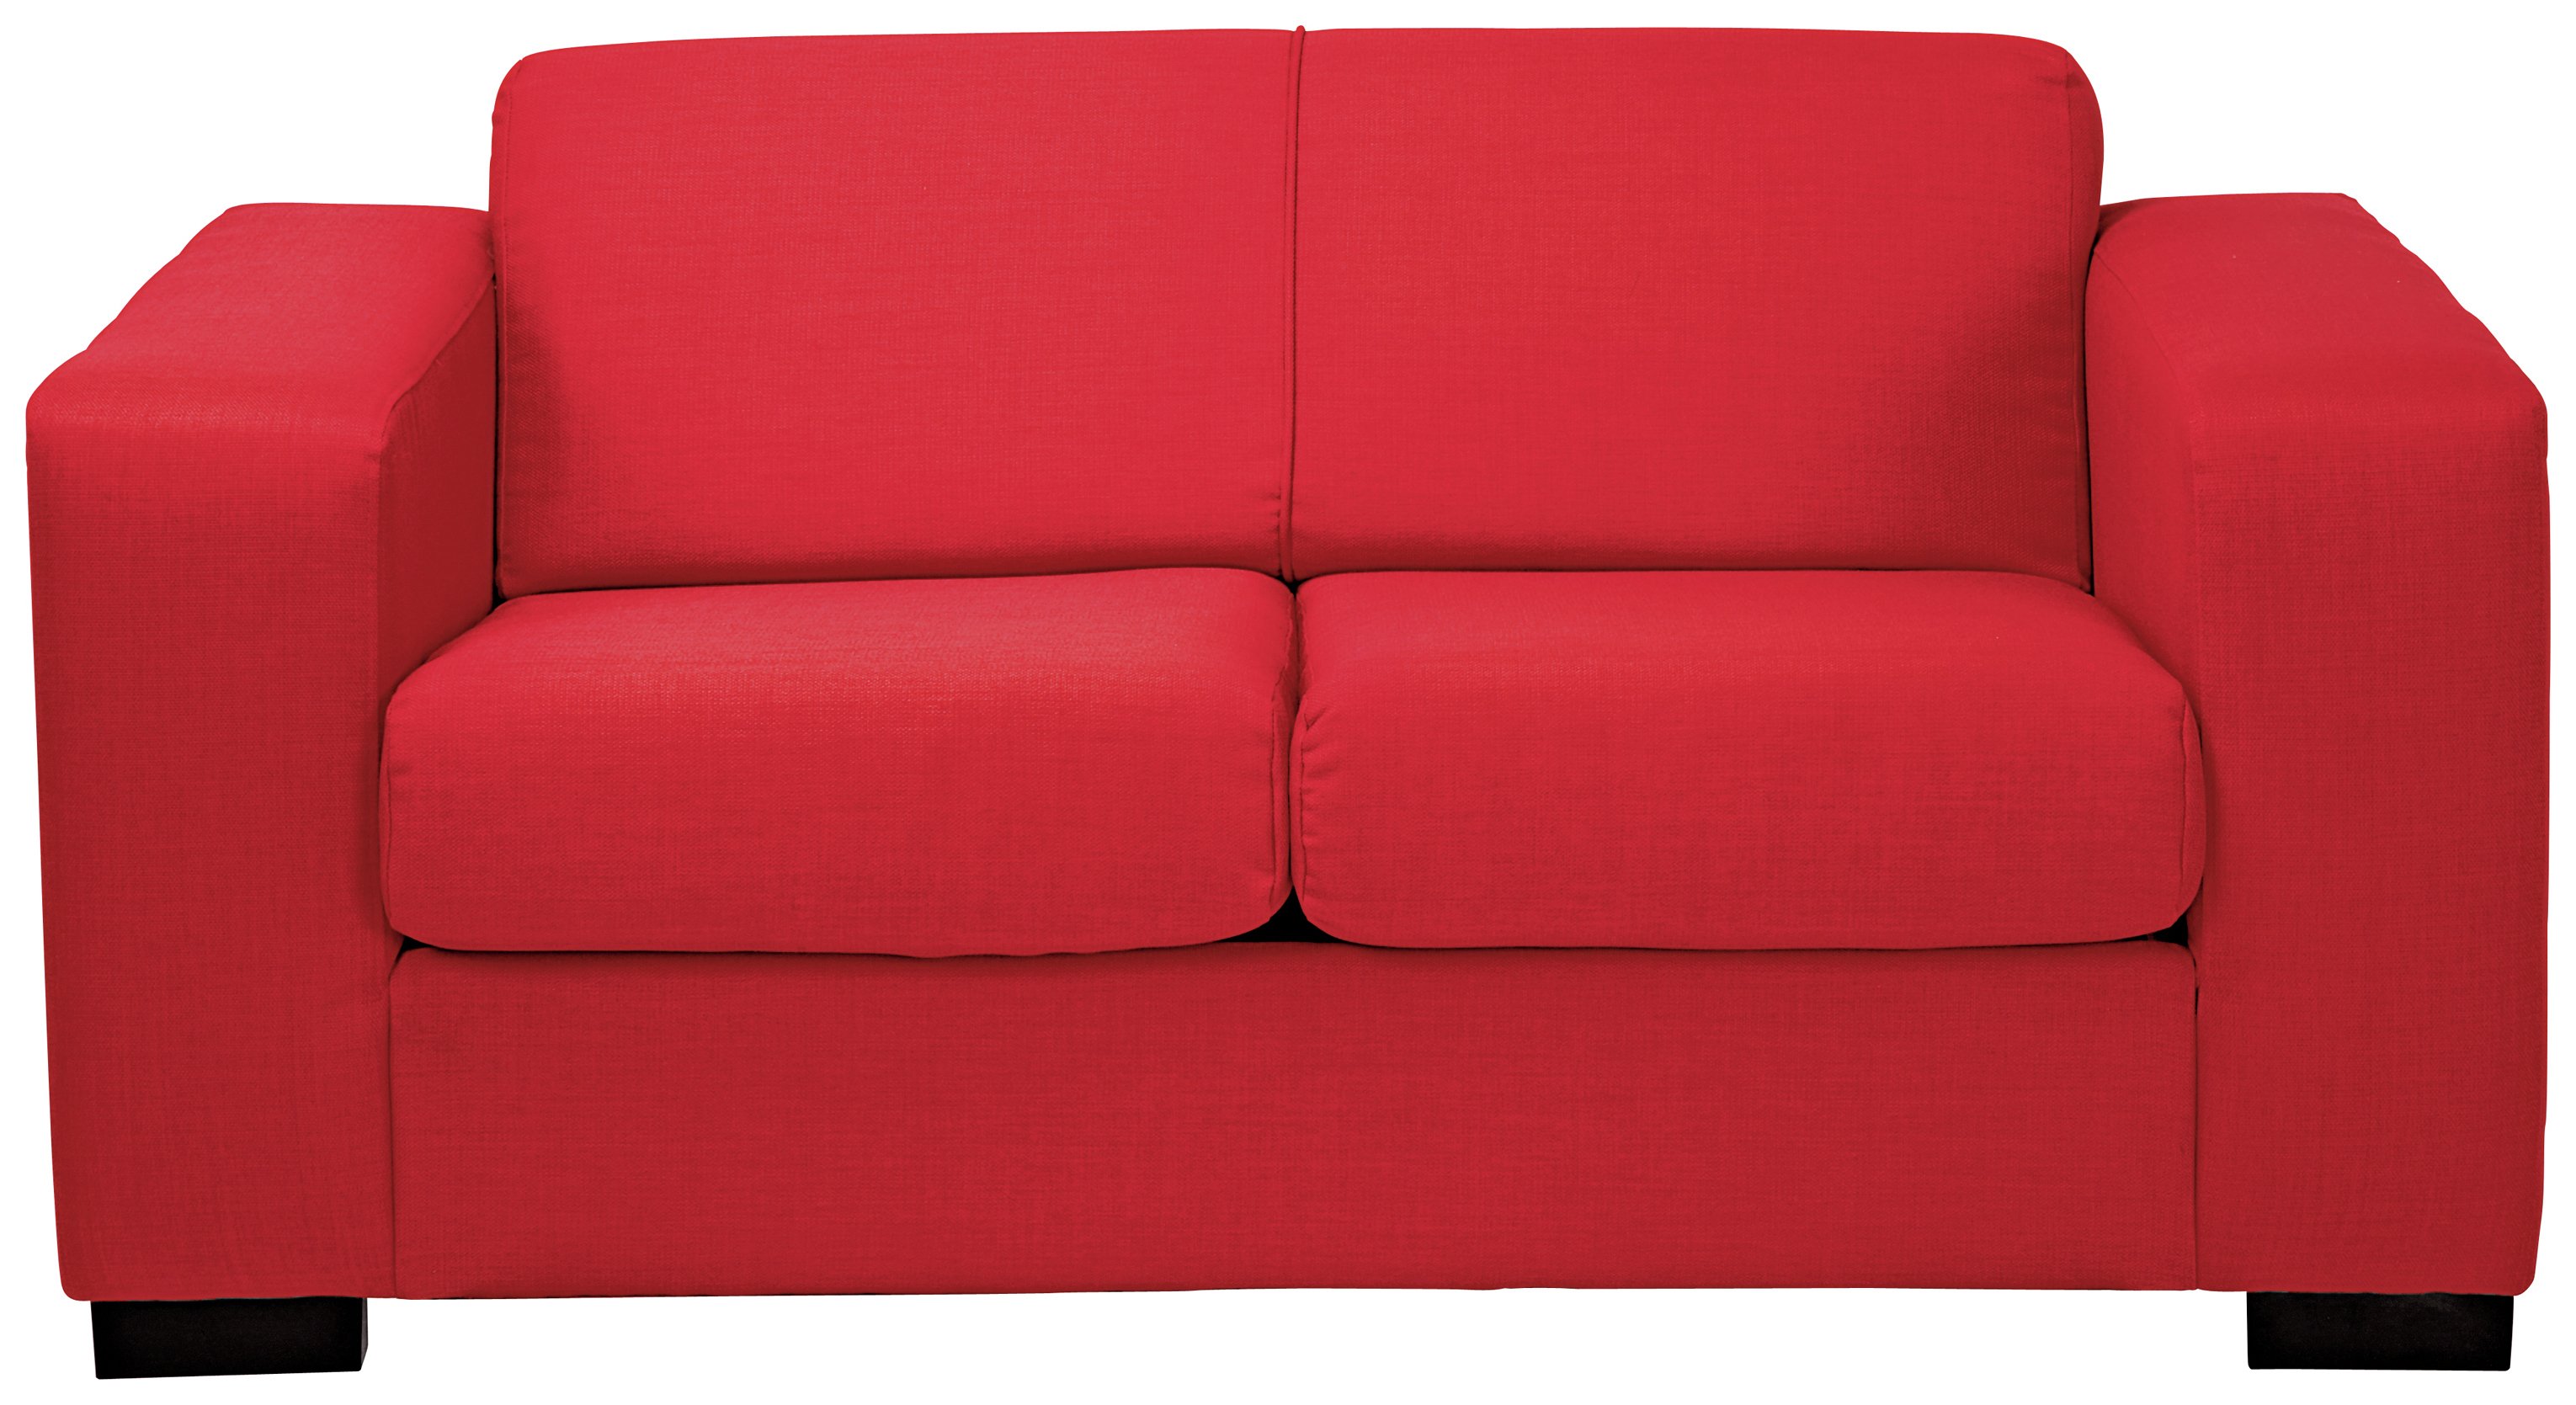 hygena new ava 2 seater fabric sofa bed